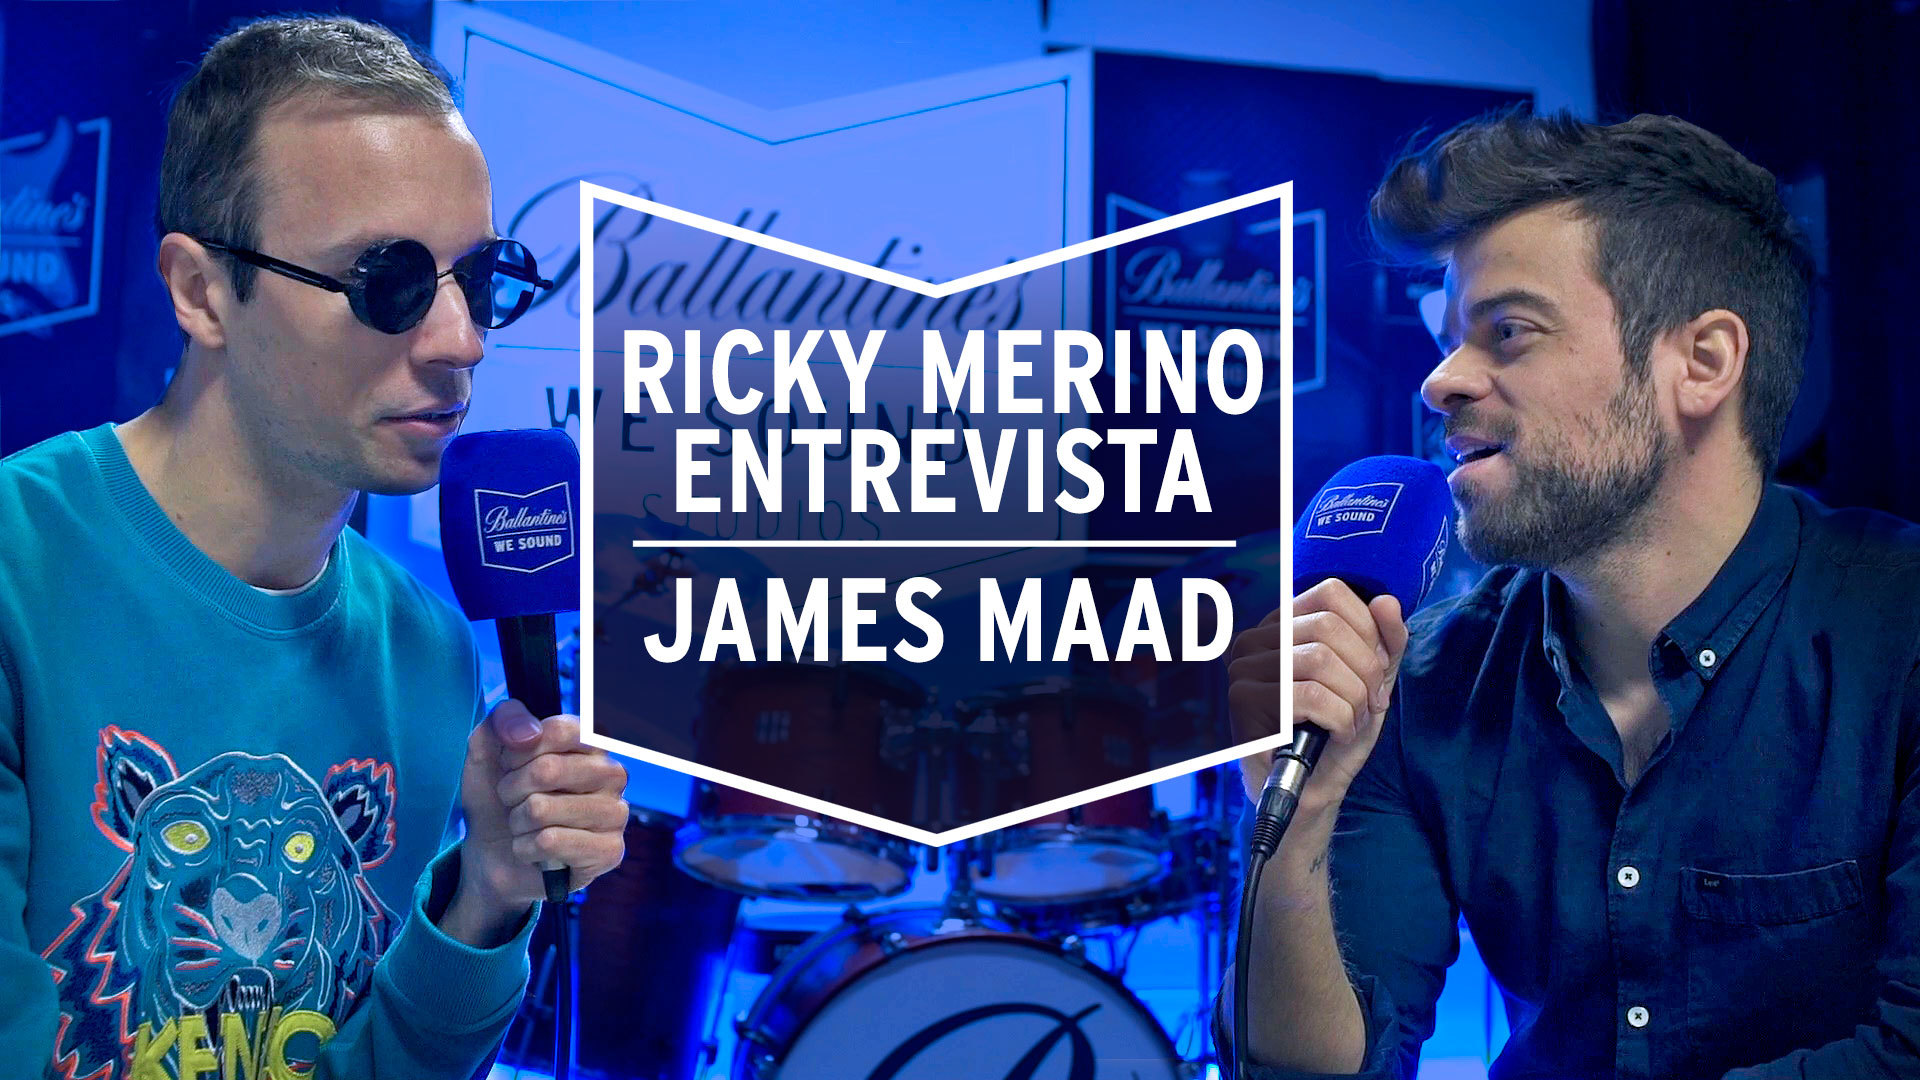 Temporada 1 Ricky Merino entrevista a James Maad: La frustación | We Sound